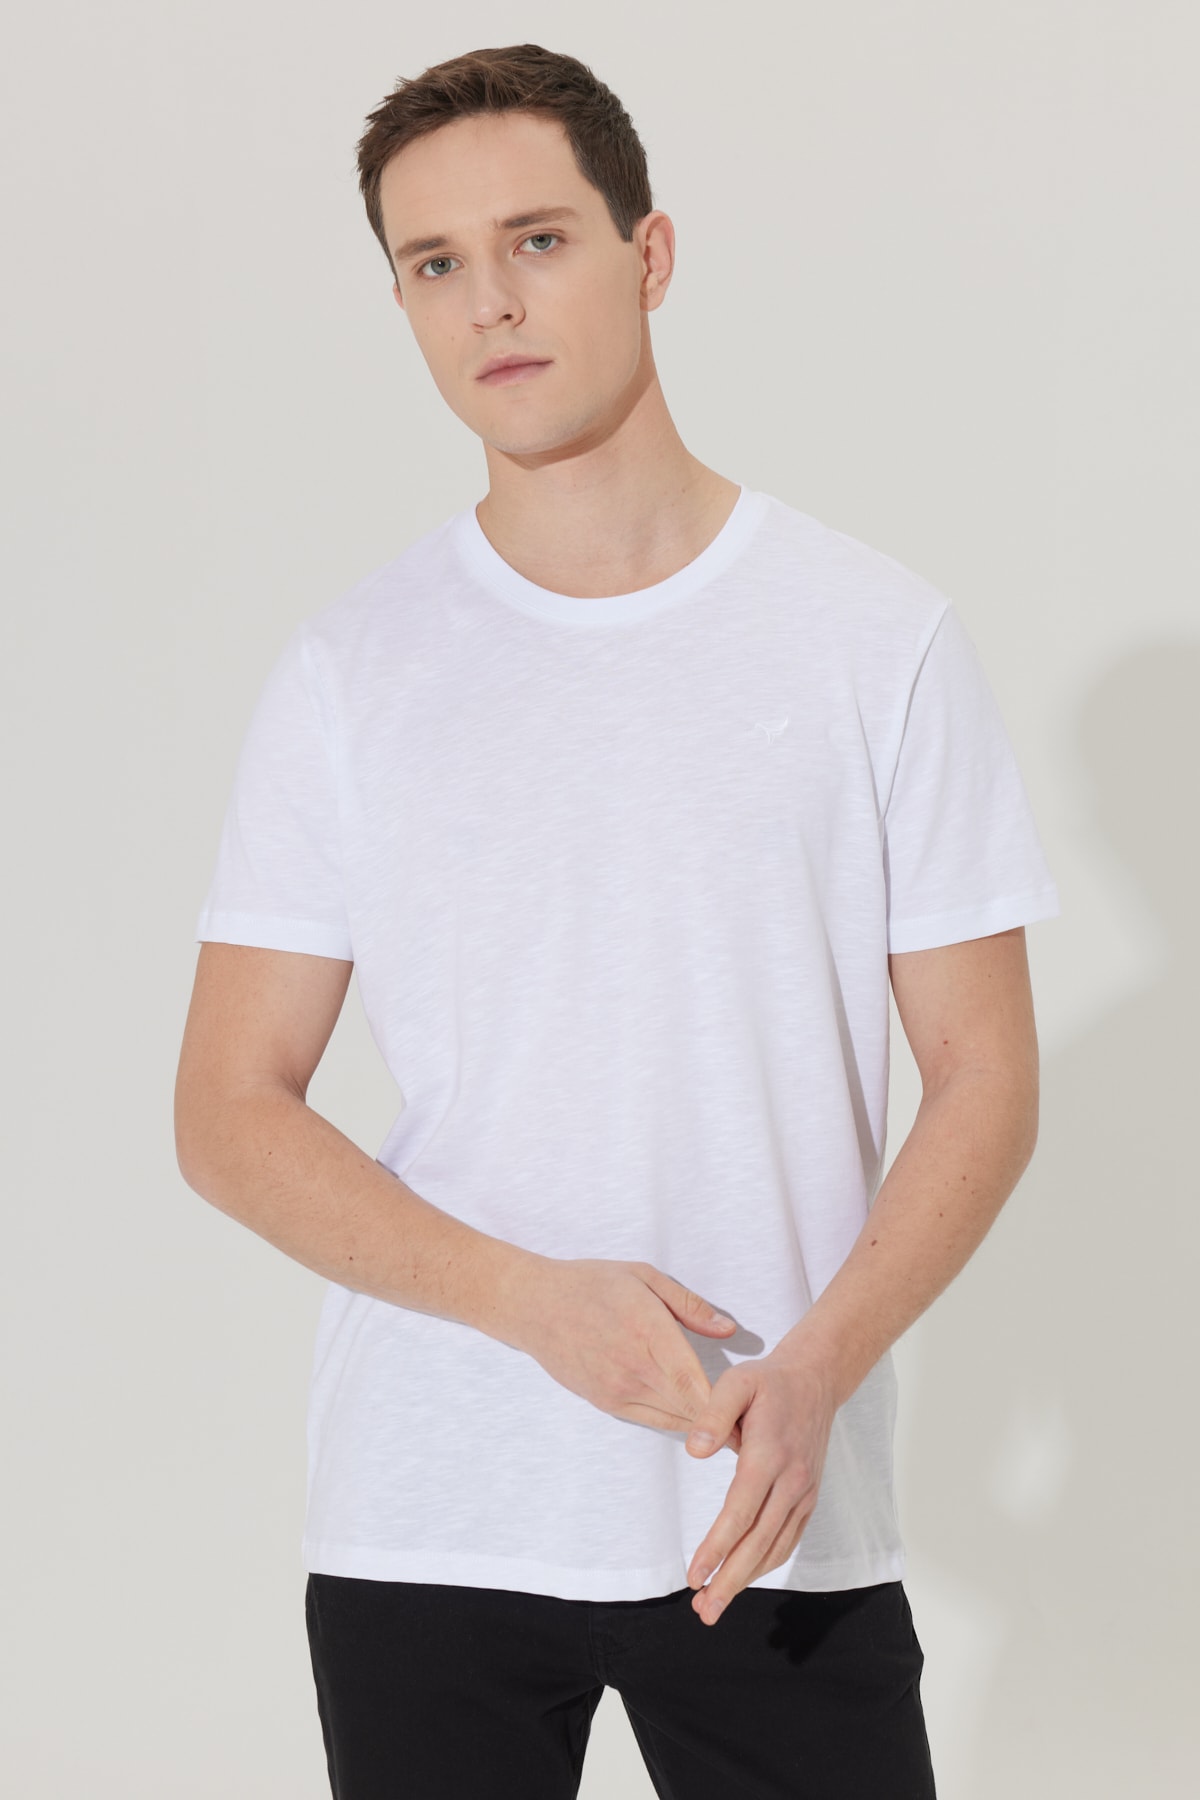 Levně ALTINYILDIZ CLASSICS Pánské bílé slim fit slim fit posádka výstřih 100% bavlna krátký rukáv logo tričko